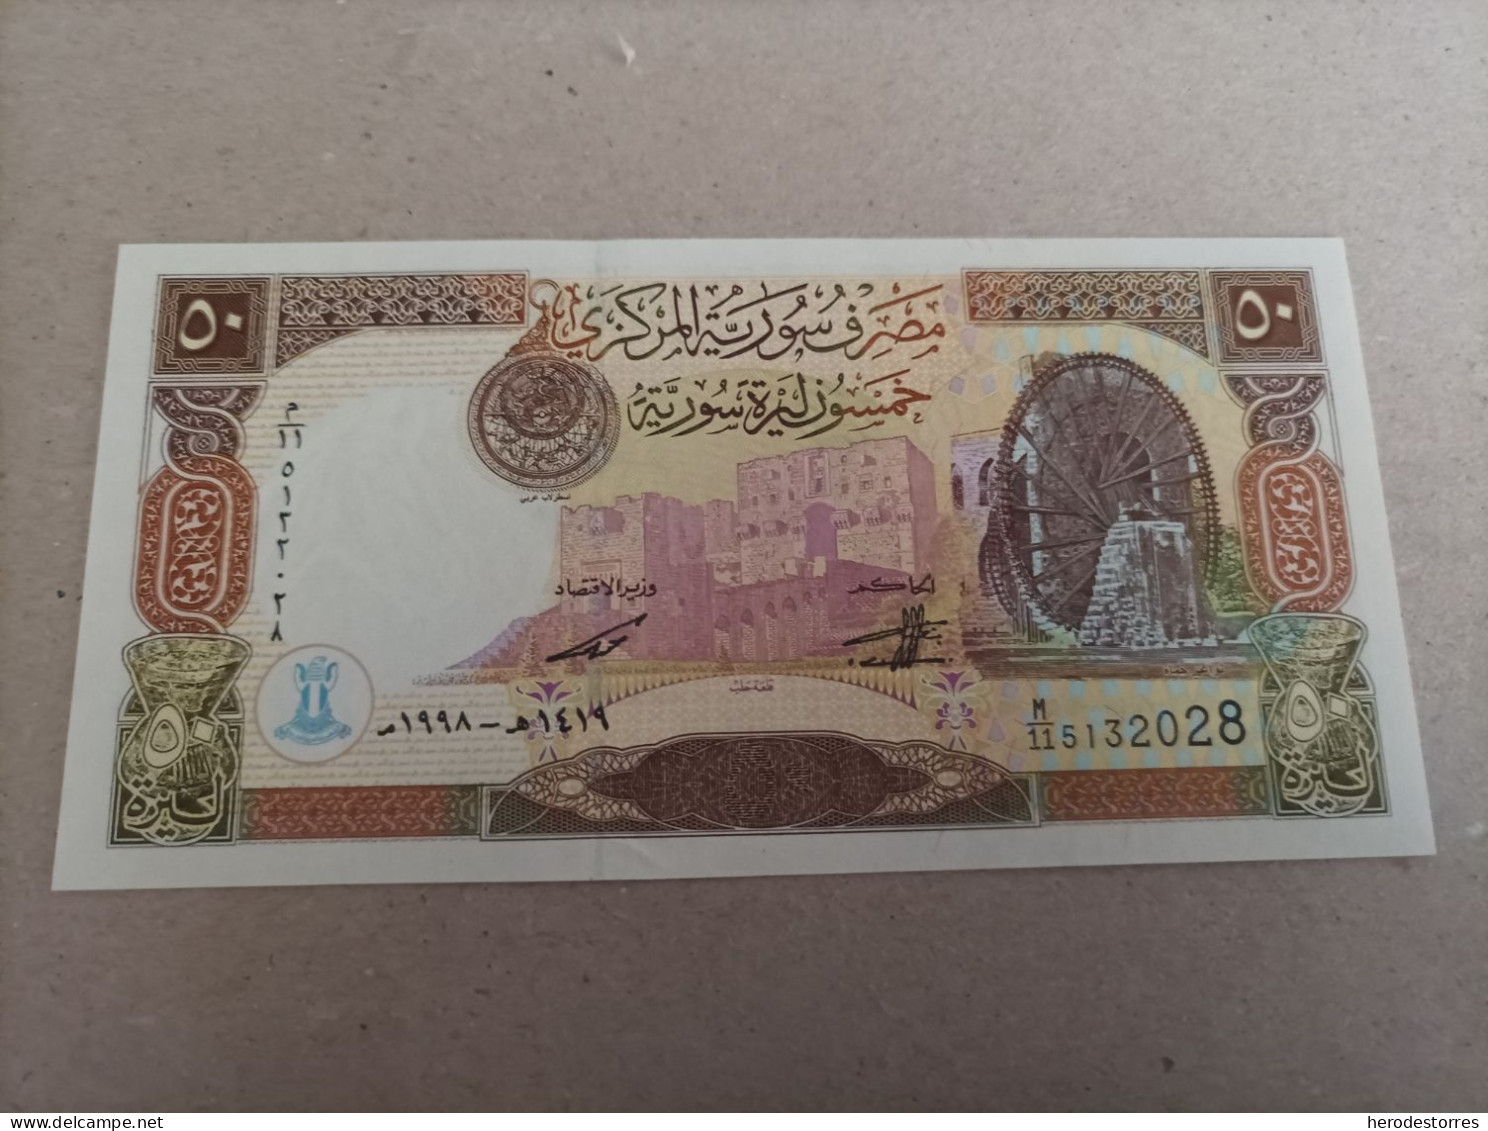 Billete De Siria De 50 Syrian Pounds, Año 1998, UNC - Syria